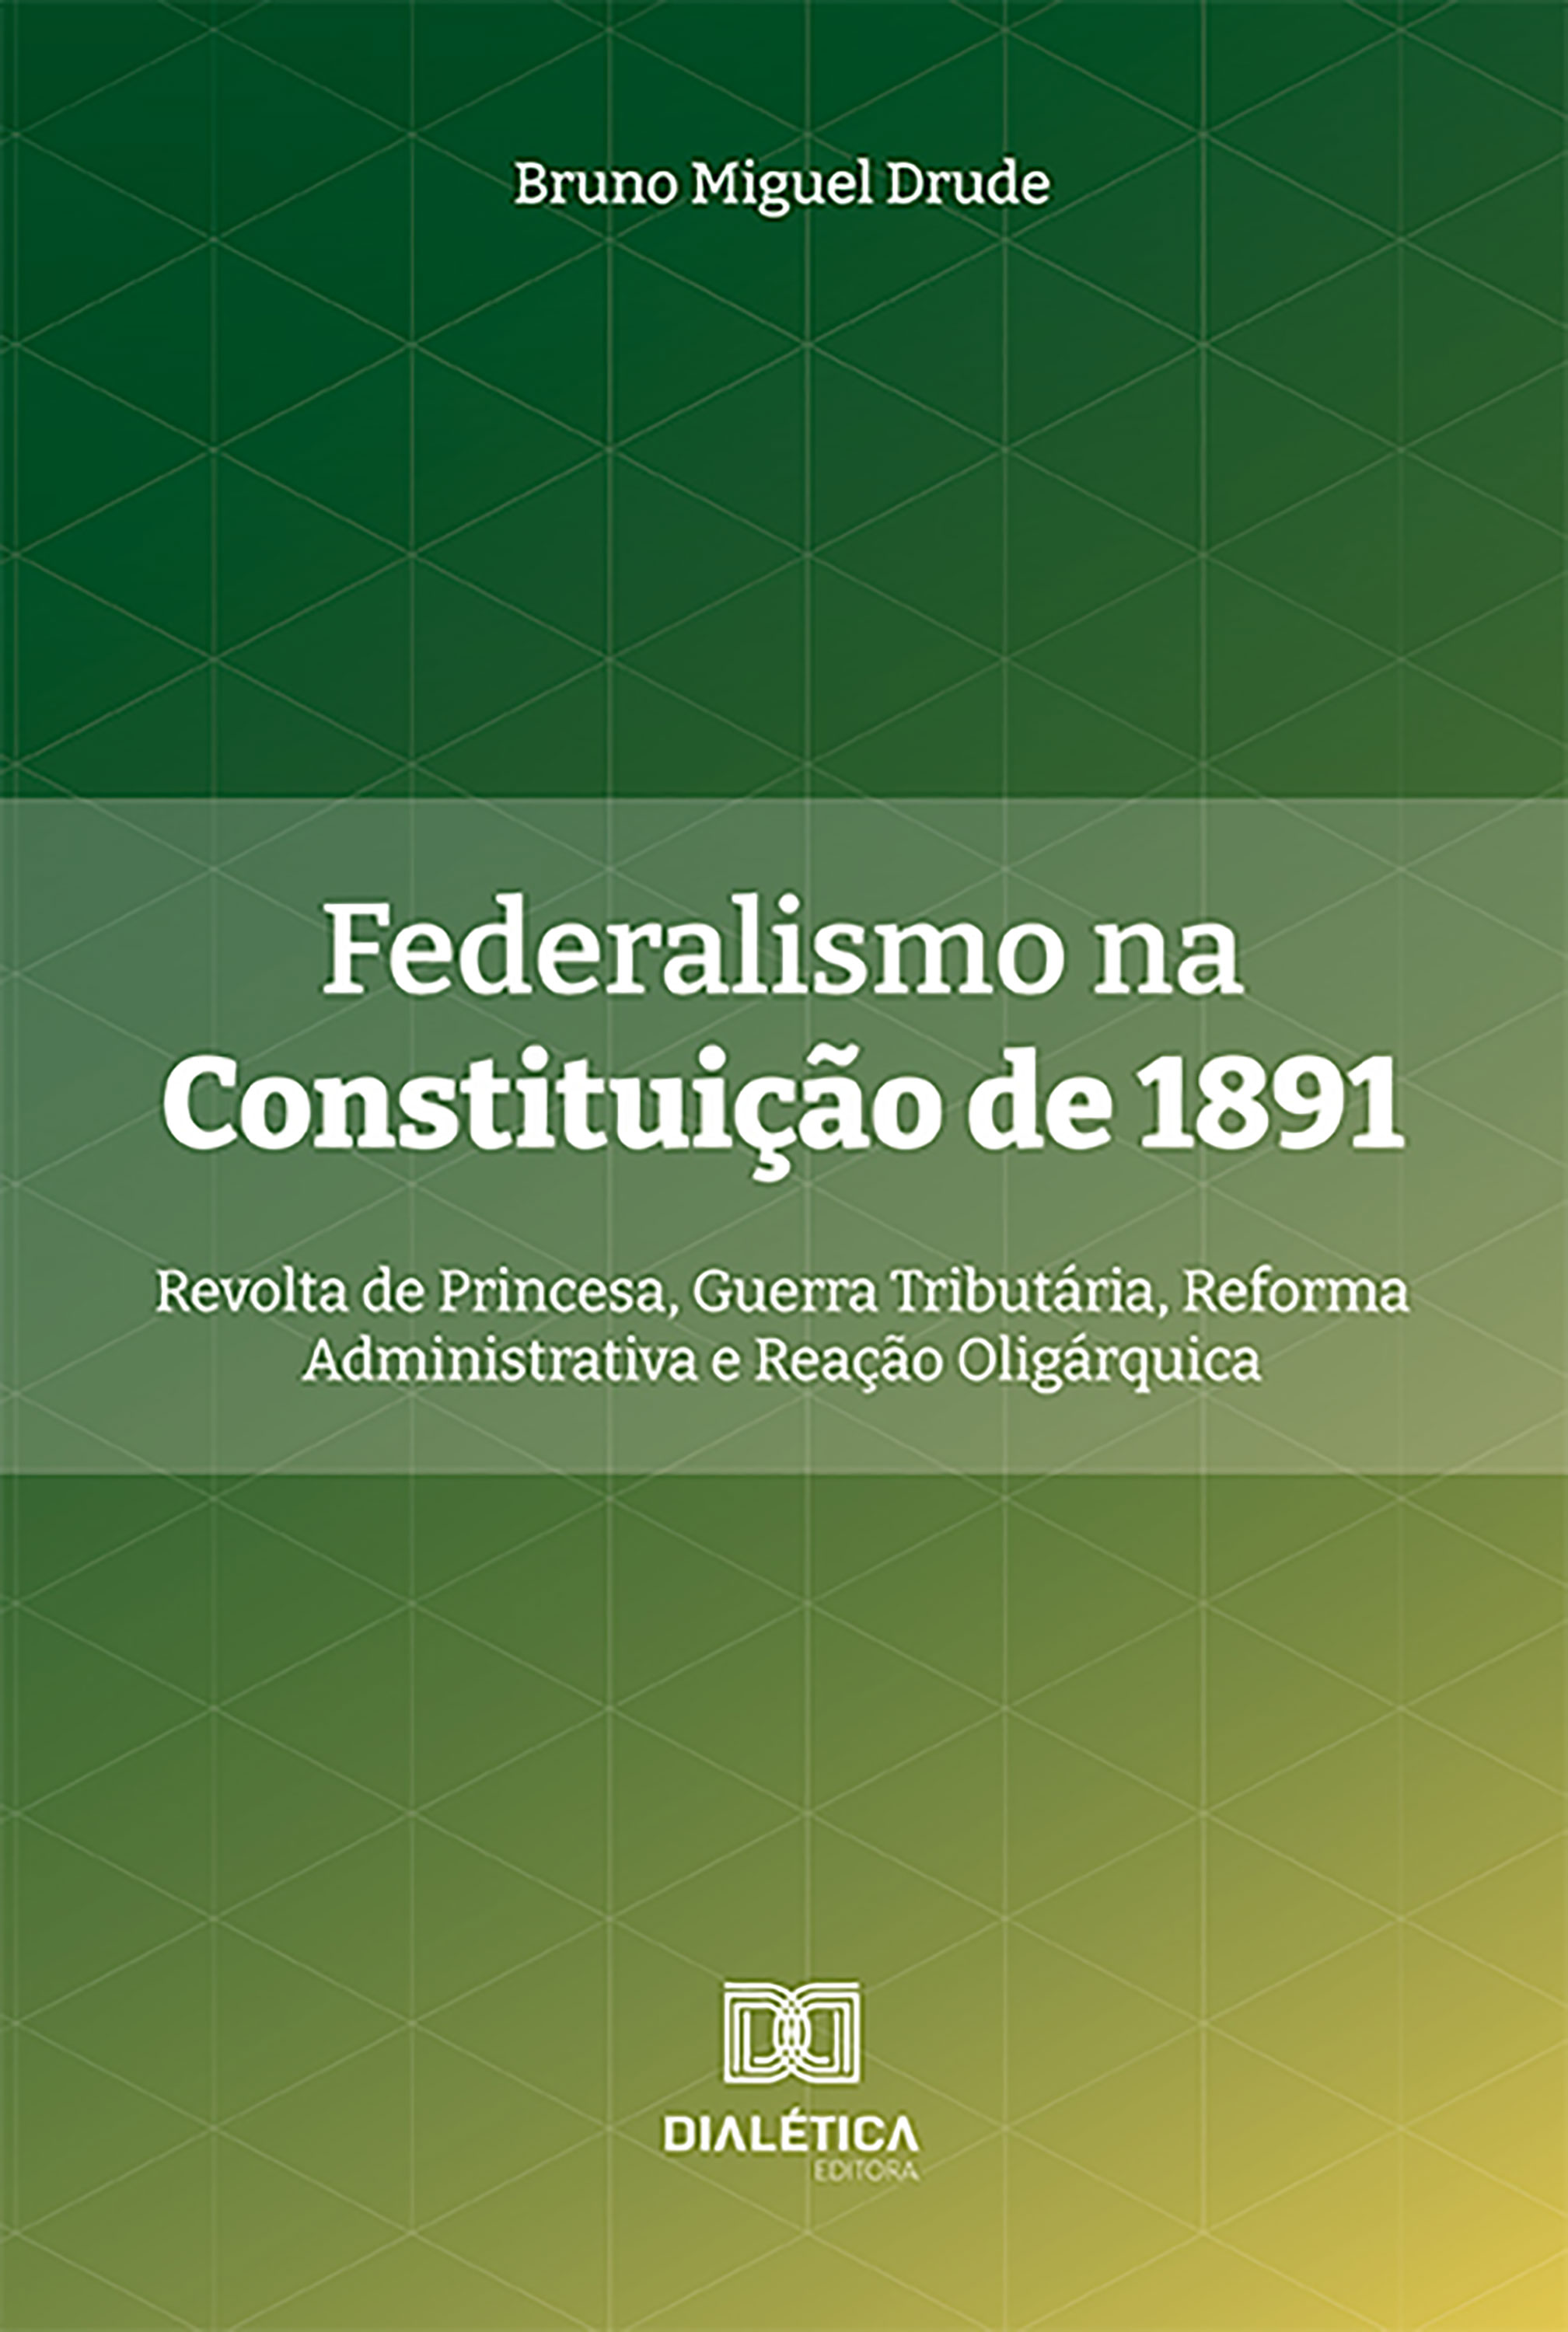 Federalismo na Constituição de 1891